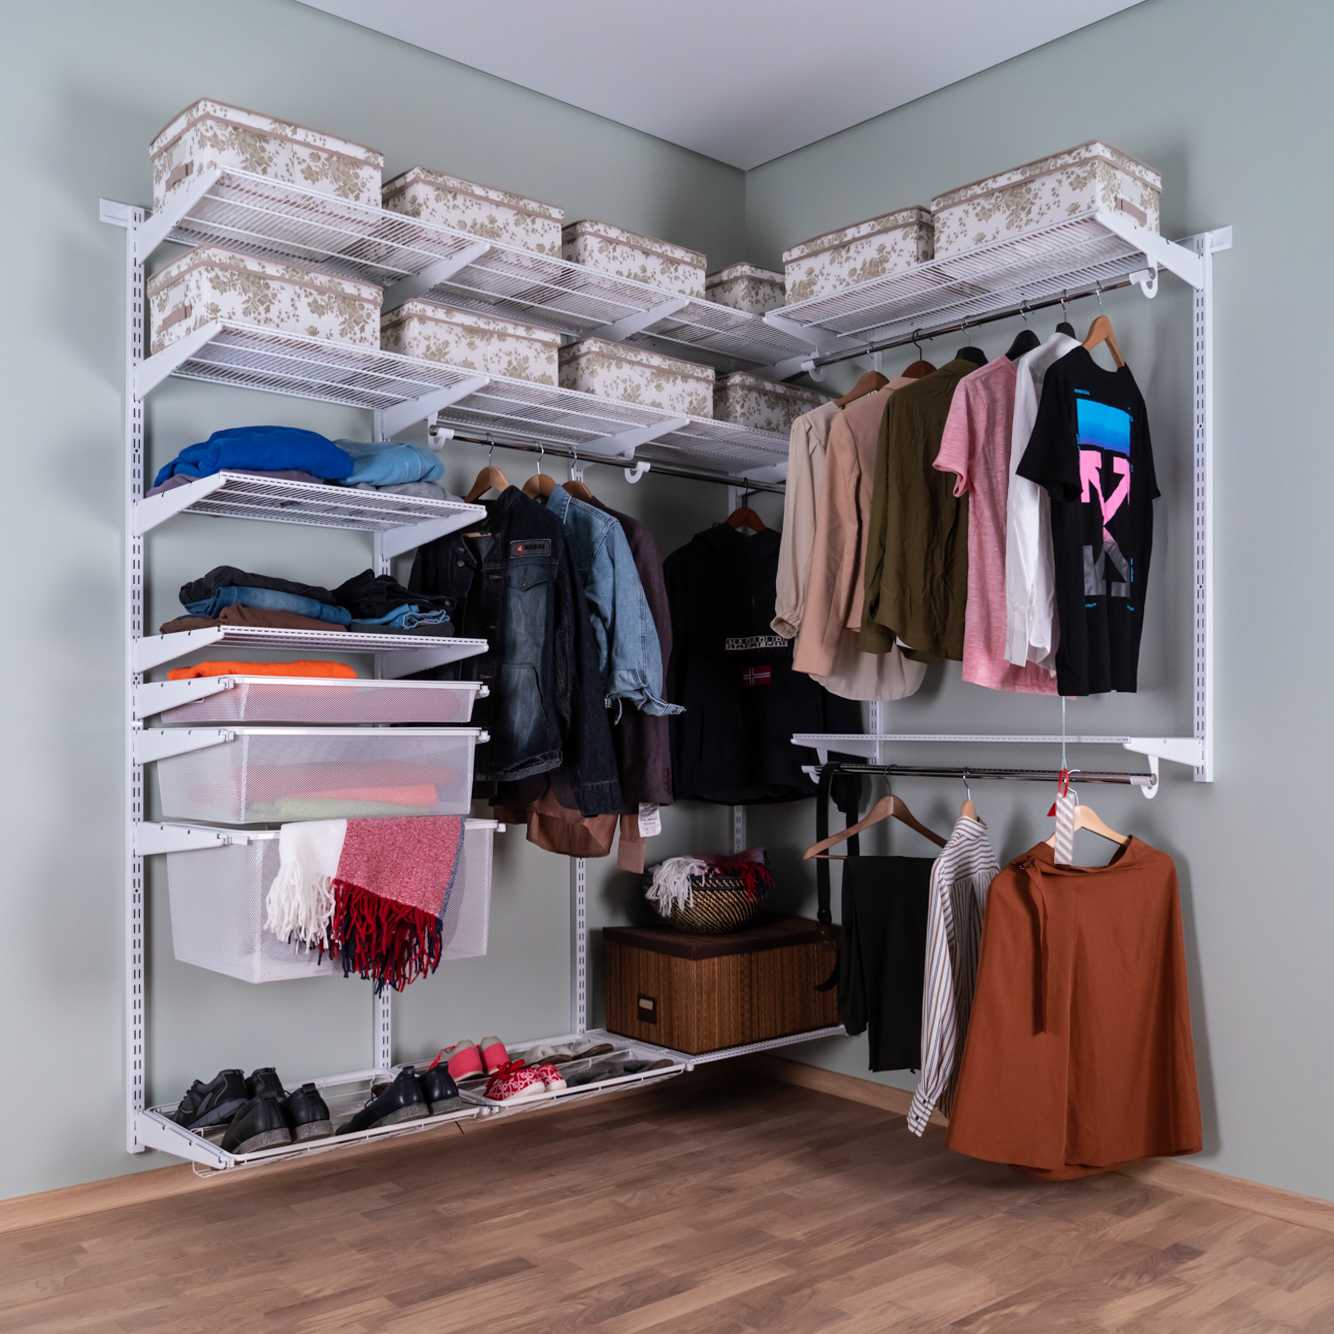 Системы хранения вещей для гардеробной: ассортимент брендов ikea, elfa, aristo – советы по ремонту